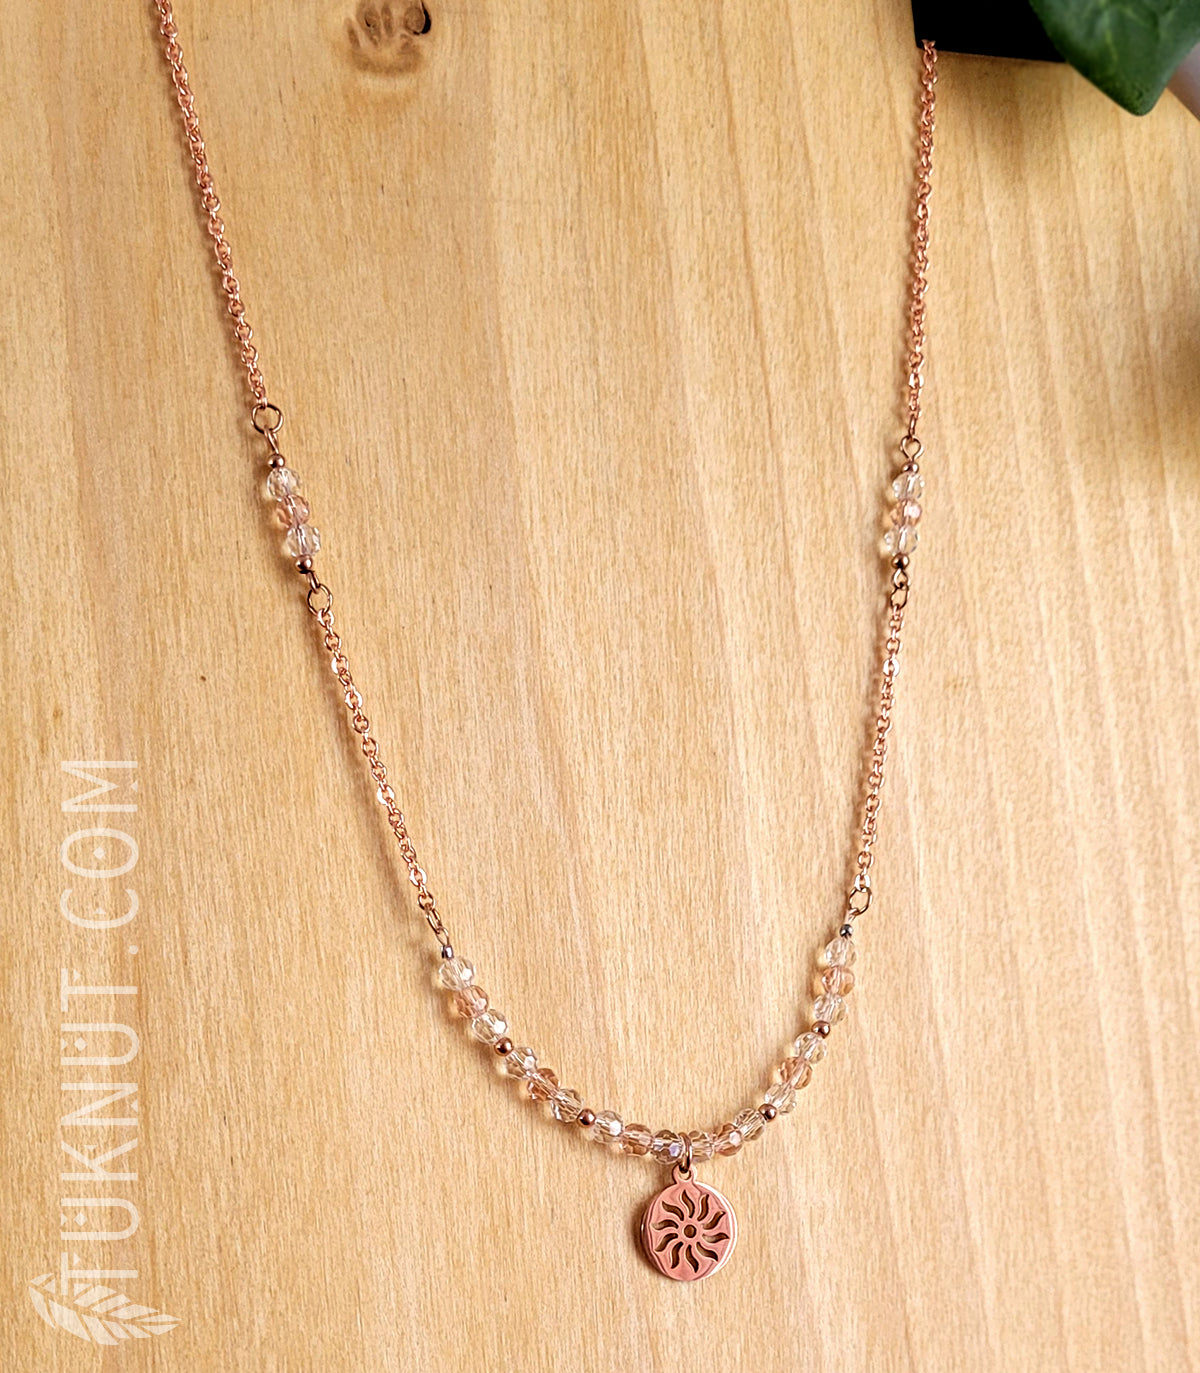 Collier d'inspiration autochtone avec pendentif (soleil) en acier inoxydable avec cristal (couleurs : rose, translucide et or rose) TUKNUT